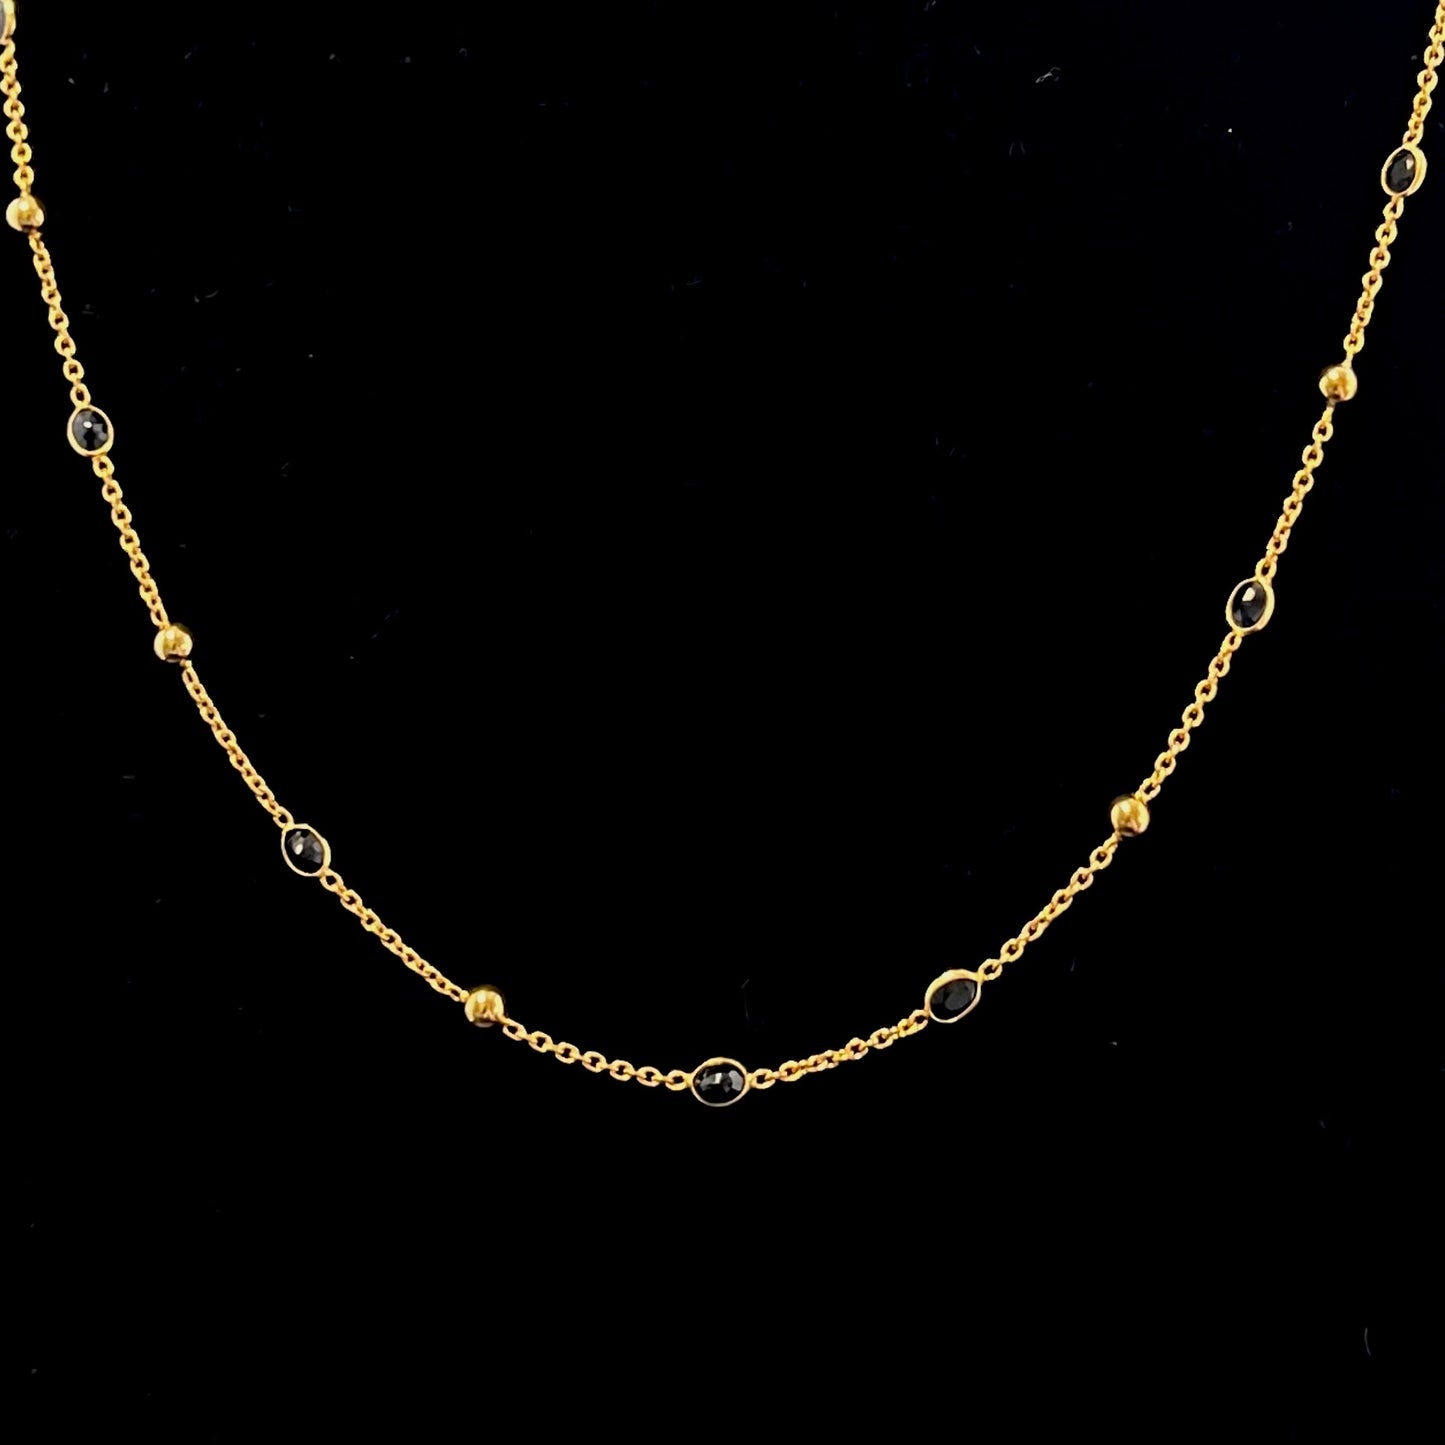 Stunning Sapphire & Gold Ball Chain